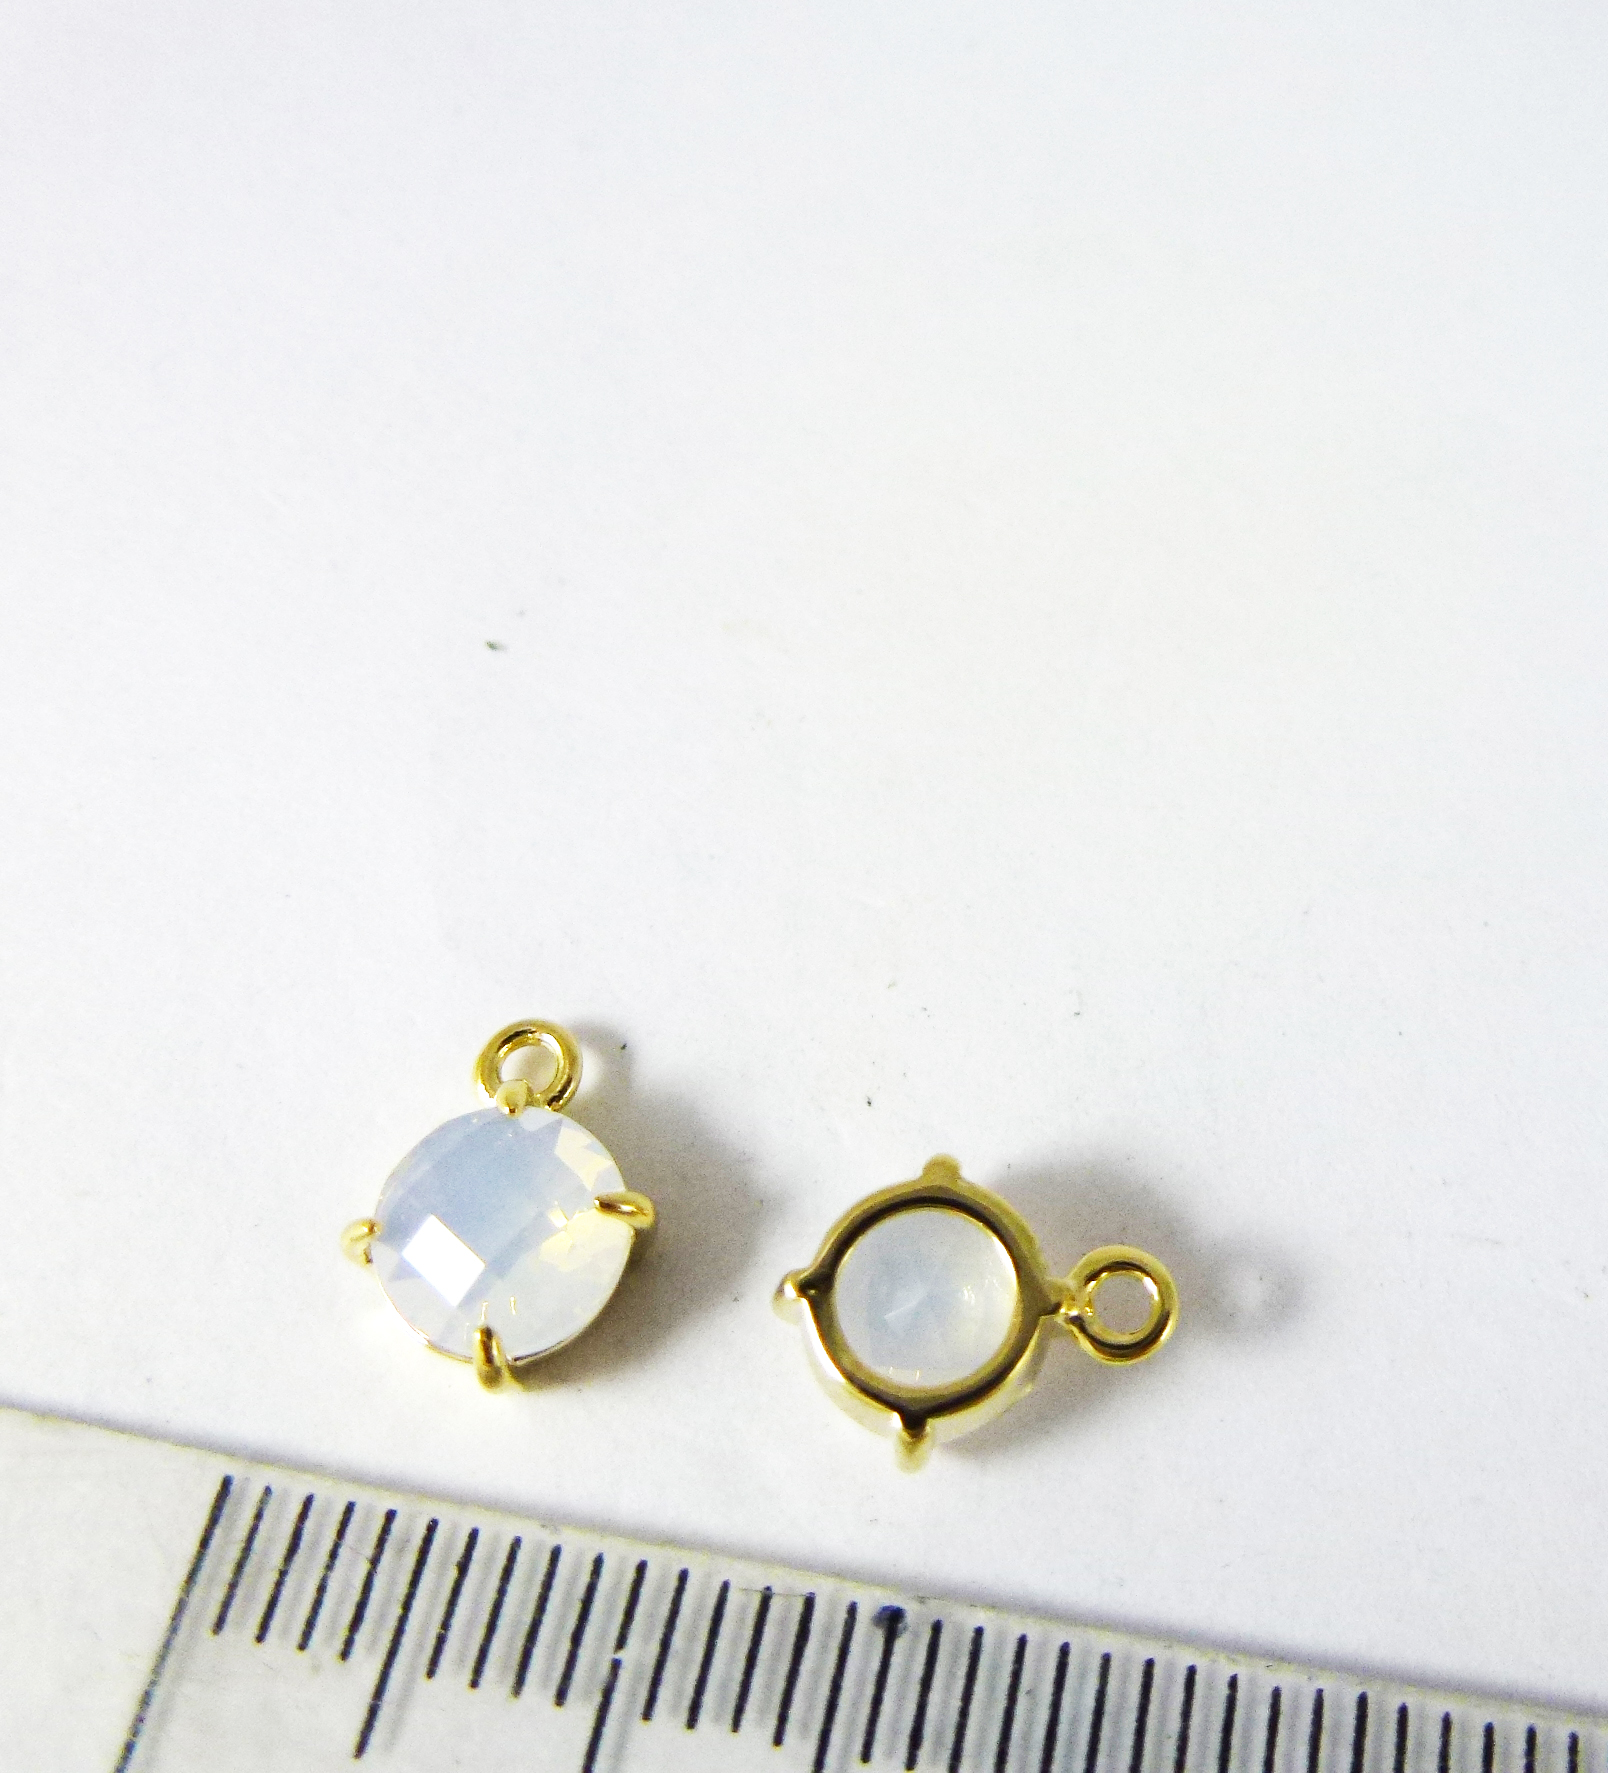 6mm銅鍍金色單孔四爪圓形誕生石-十月蛋白石